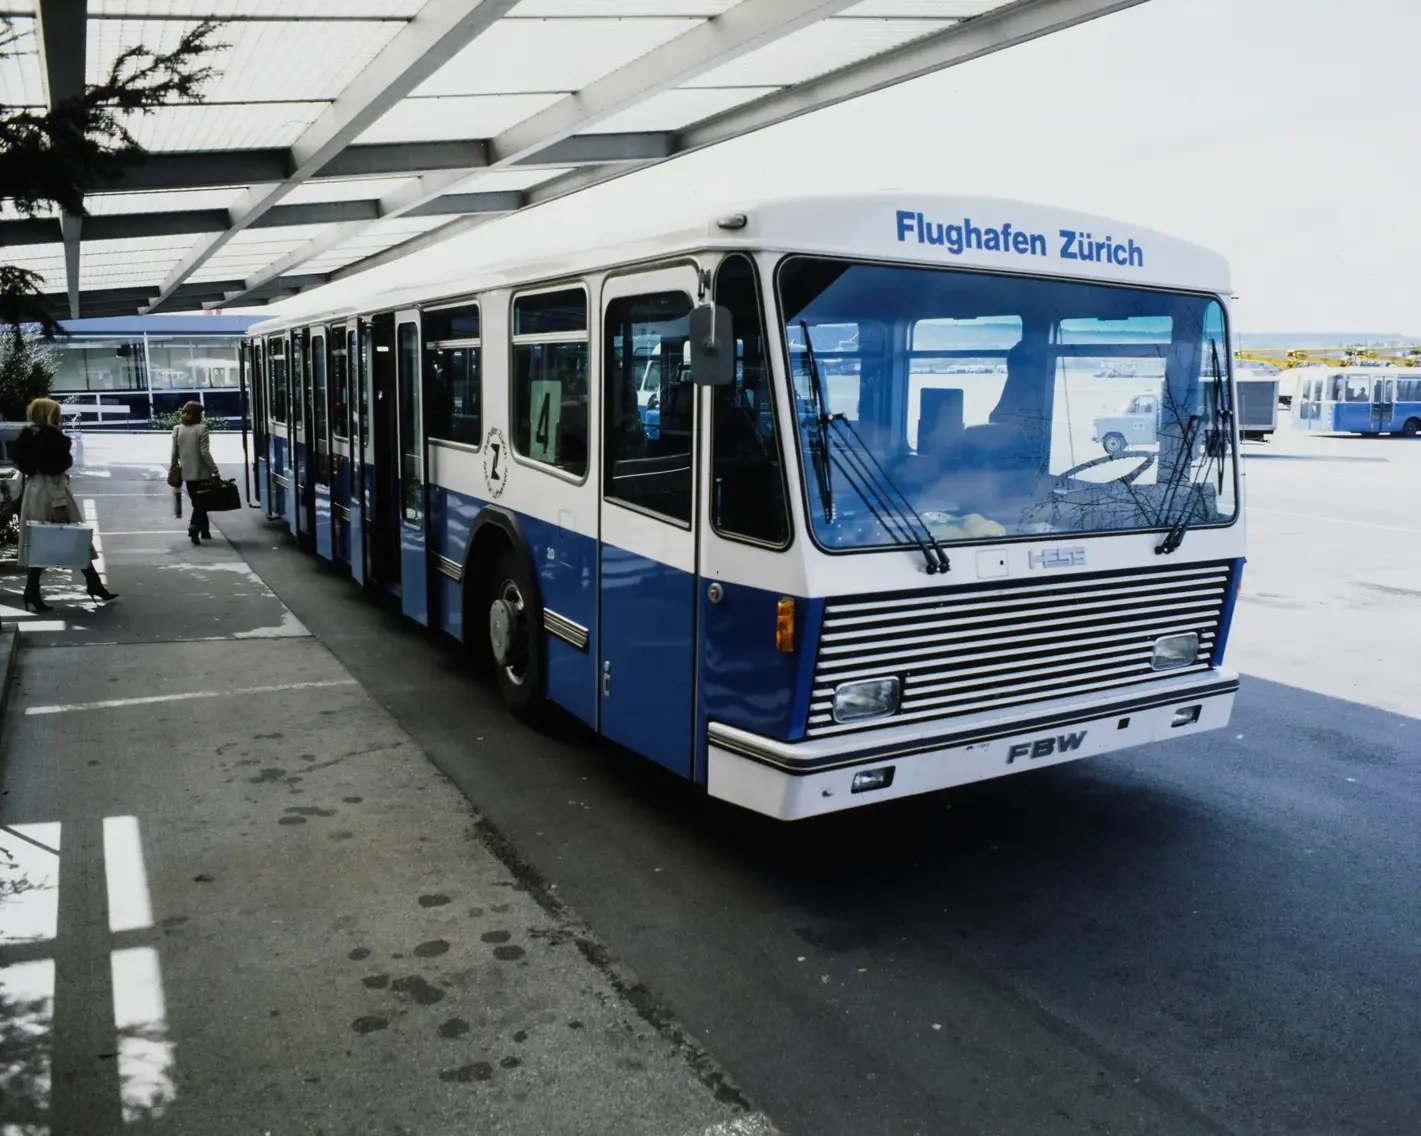 1978 nahmen die erste beiden Flughafenbusse, entwickelt von der Firma Hess aus Solothurn, ihren Dienst am Flughafen Zürich auf. Fotos: Bildarchiv ETH Zürich